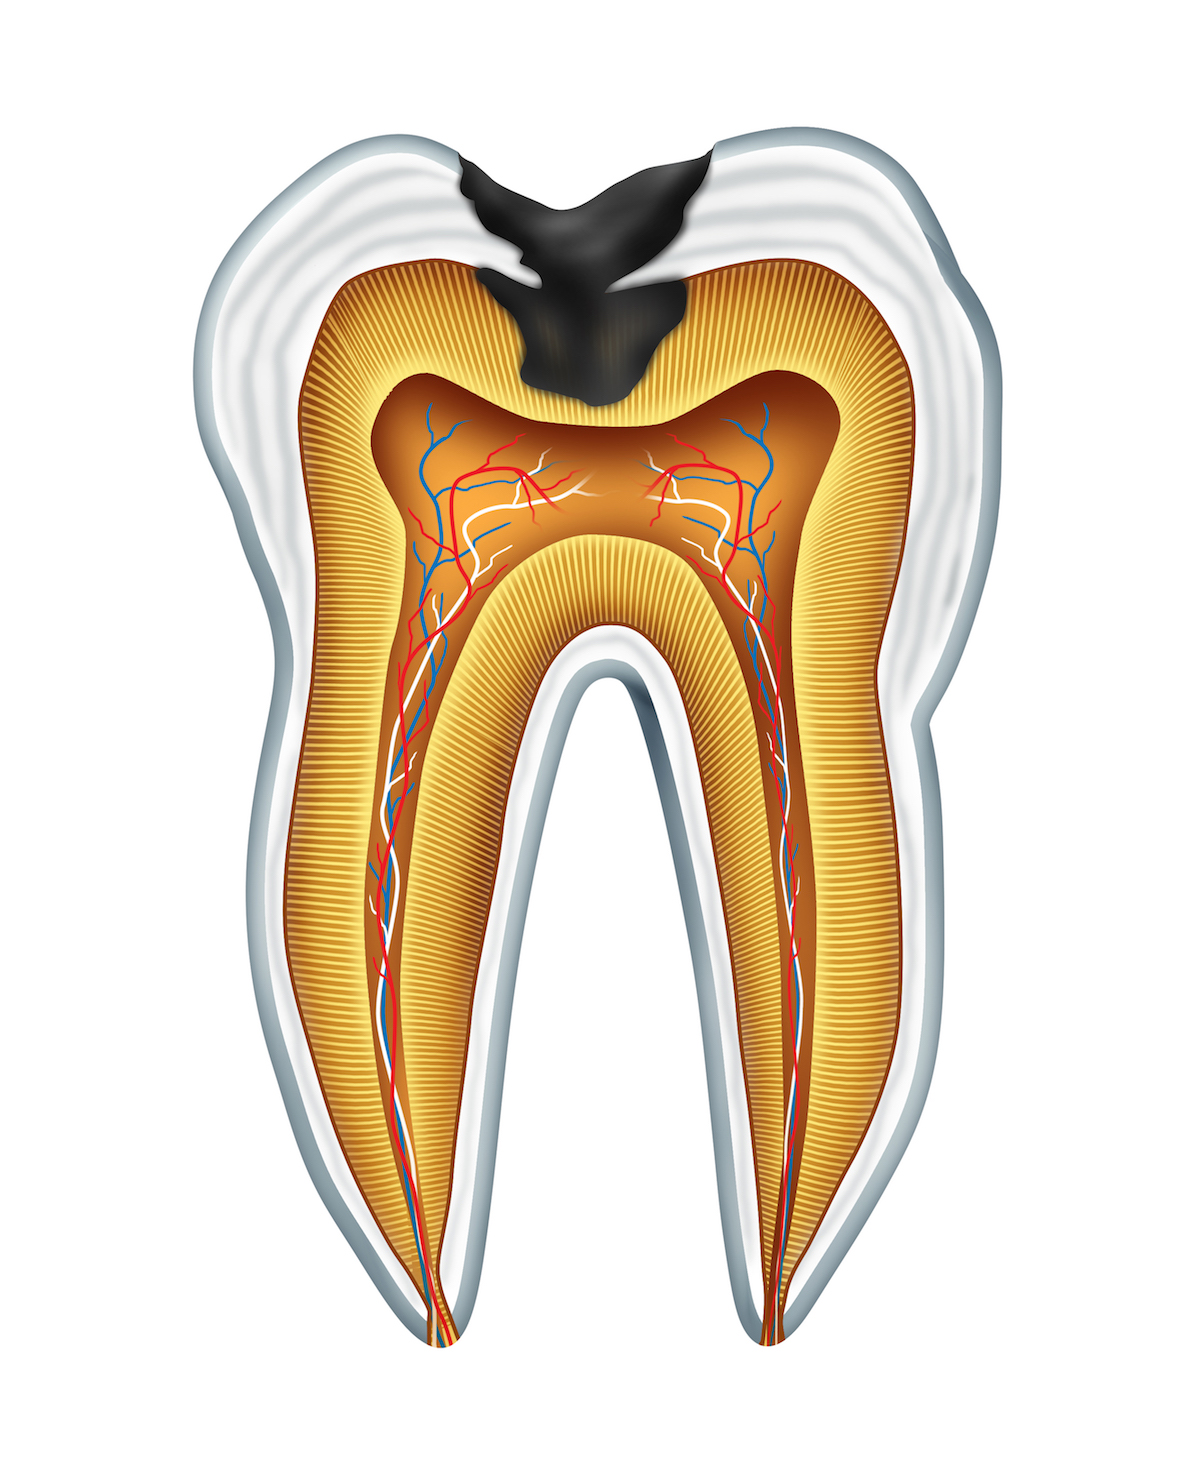 endodoncija, lečenje kanala korena, vađenje živca, pulpitis, gangrena zuba